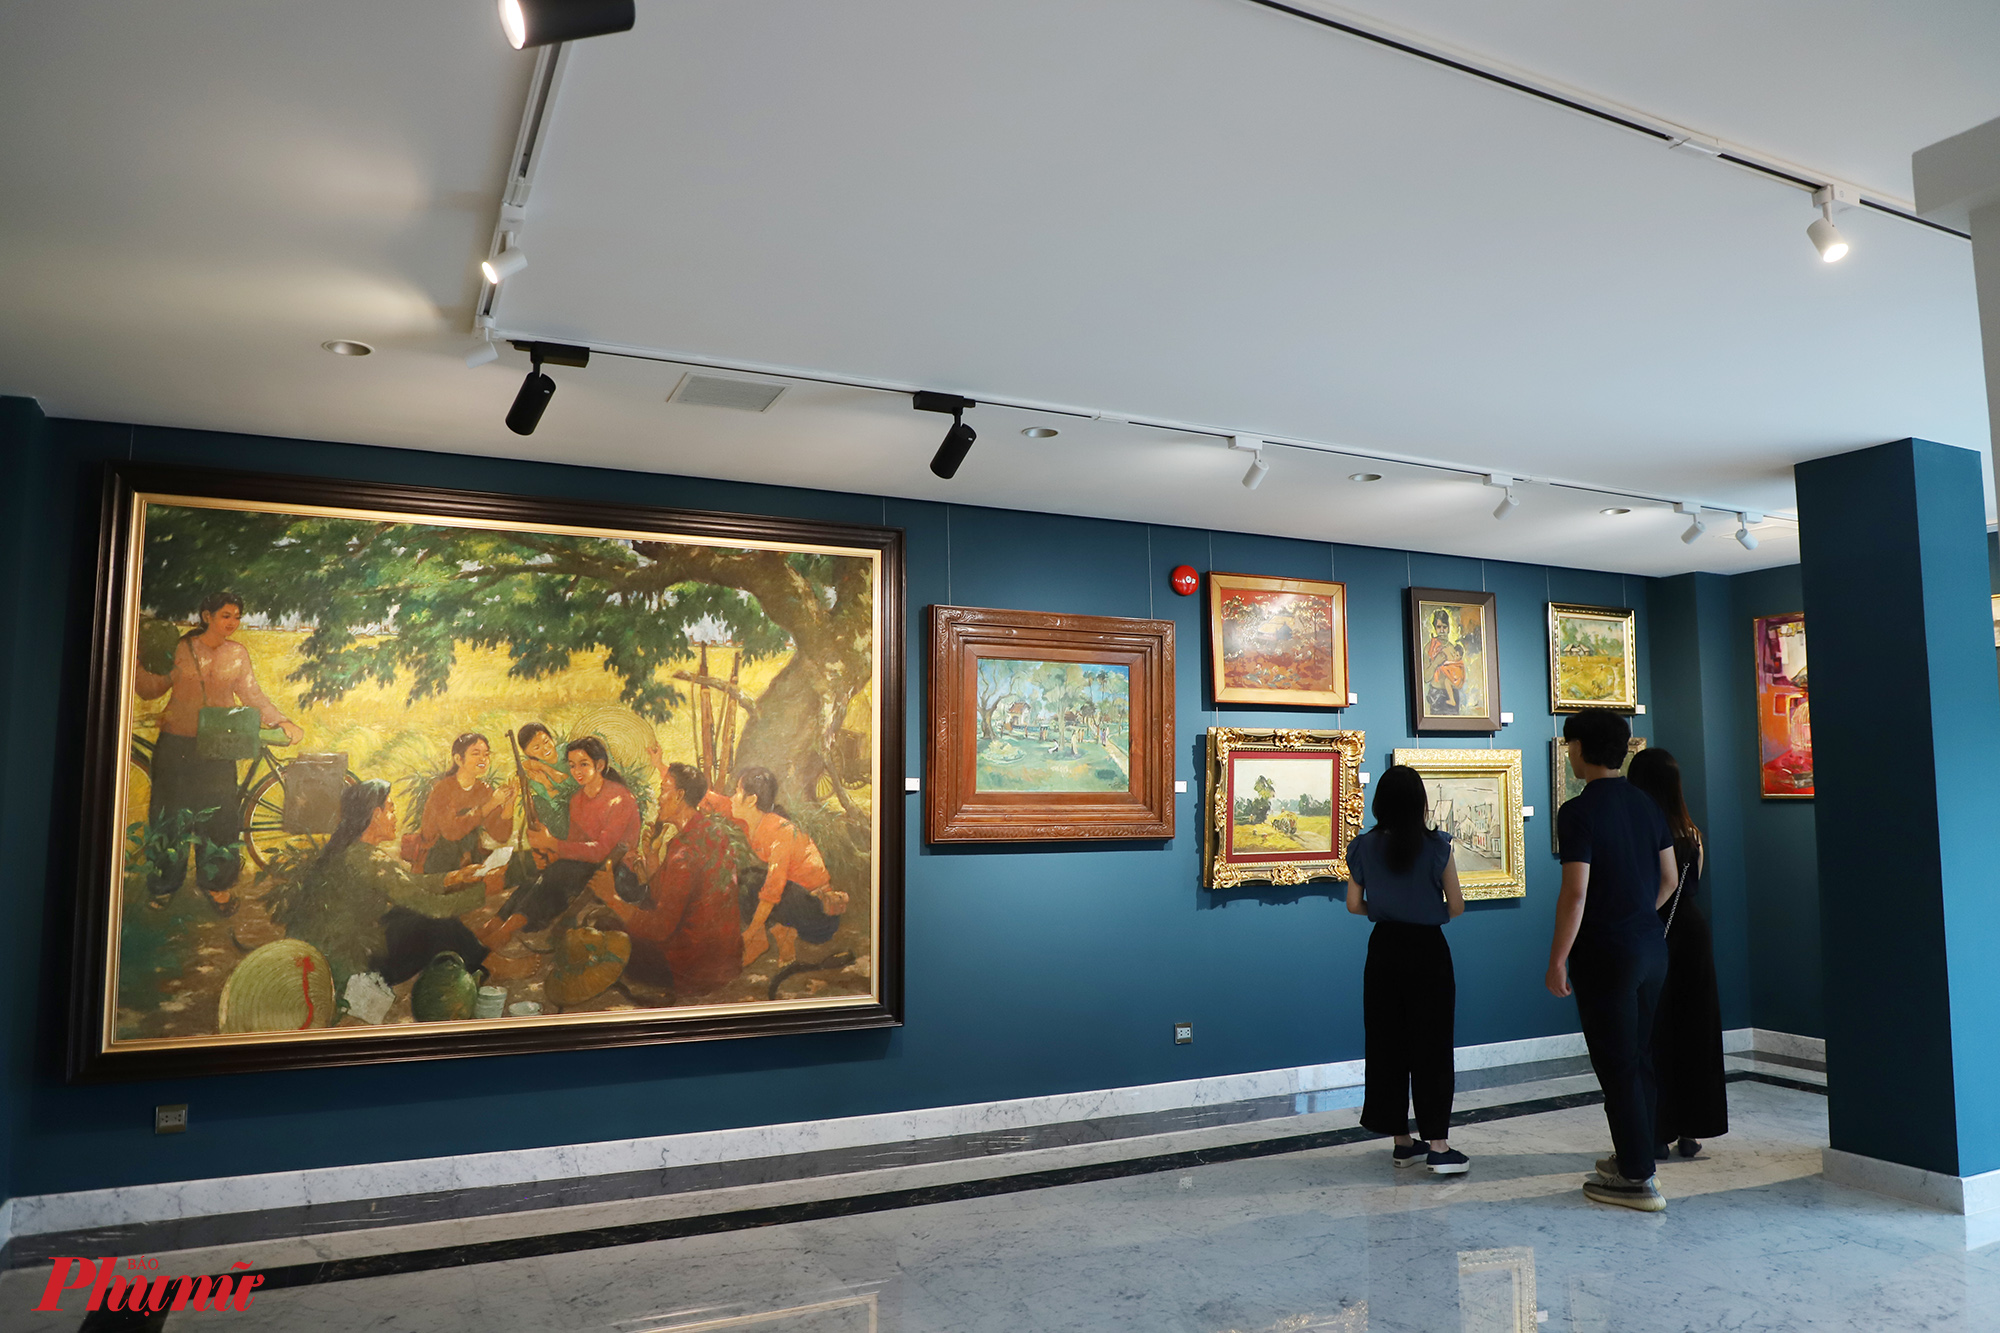 Trong bảo tàng có nhiều tác phẩm với kích thước lớn. Bức tranh Đọc thư tiền phương được hoạ sĩ Nguyễn Hiêm vẽ năm 1964. Tranh vẽ cảnh nhận thư tiền phương từ thời chiến tranh chống Mỹ 